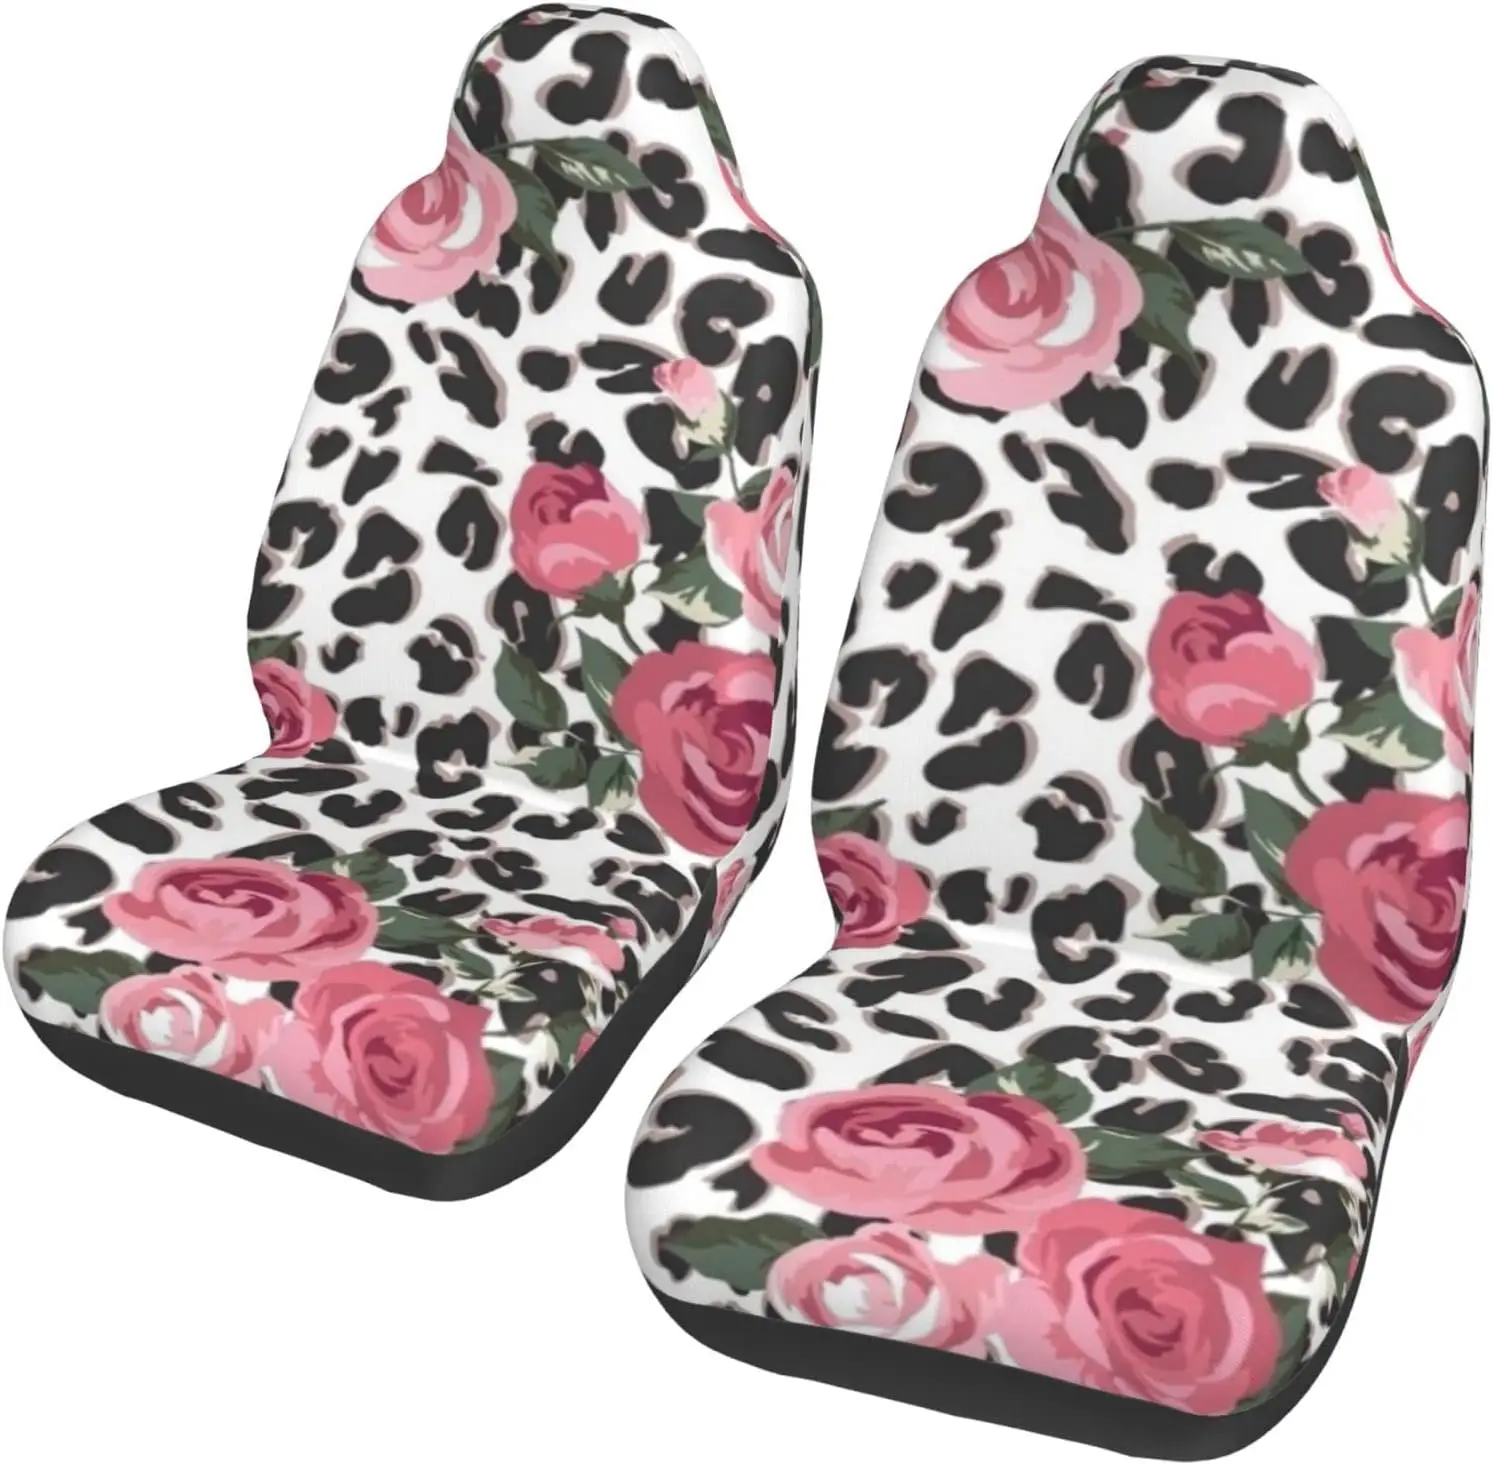 

2 шт., эластичные чехлы для автомобильных сидений, с леопардовым принтом